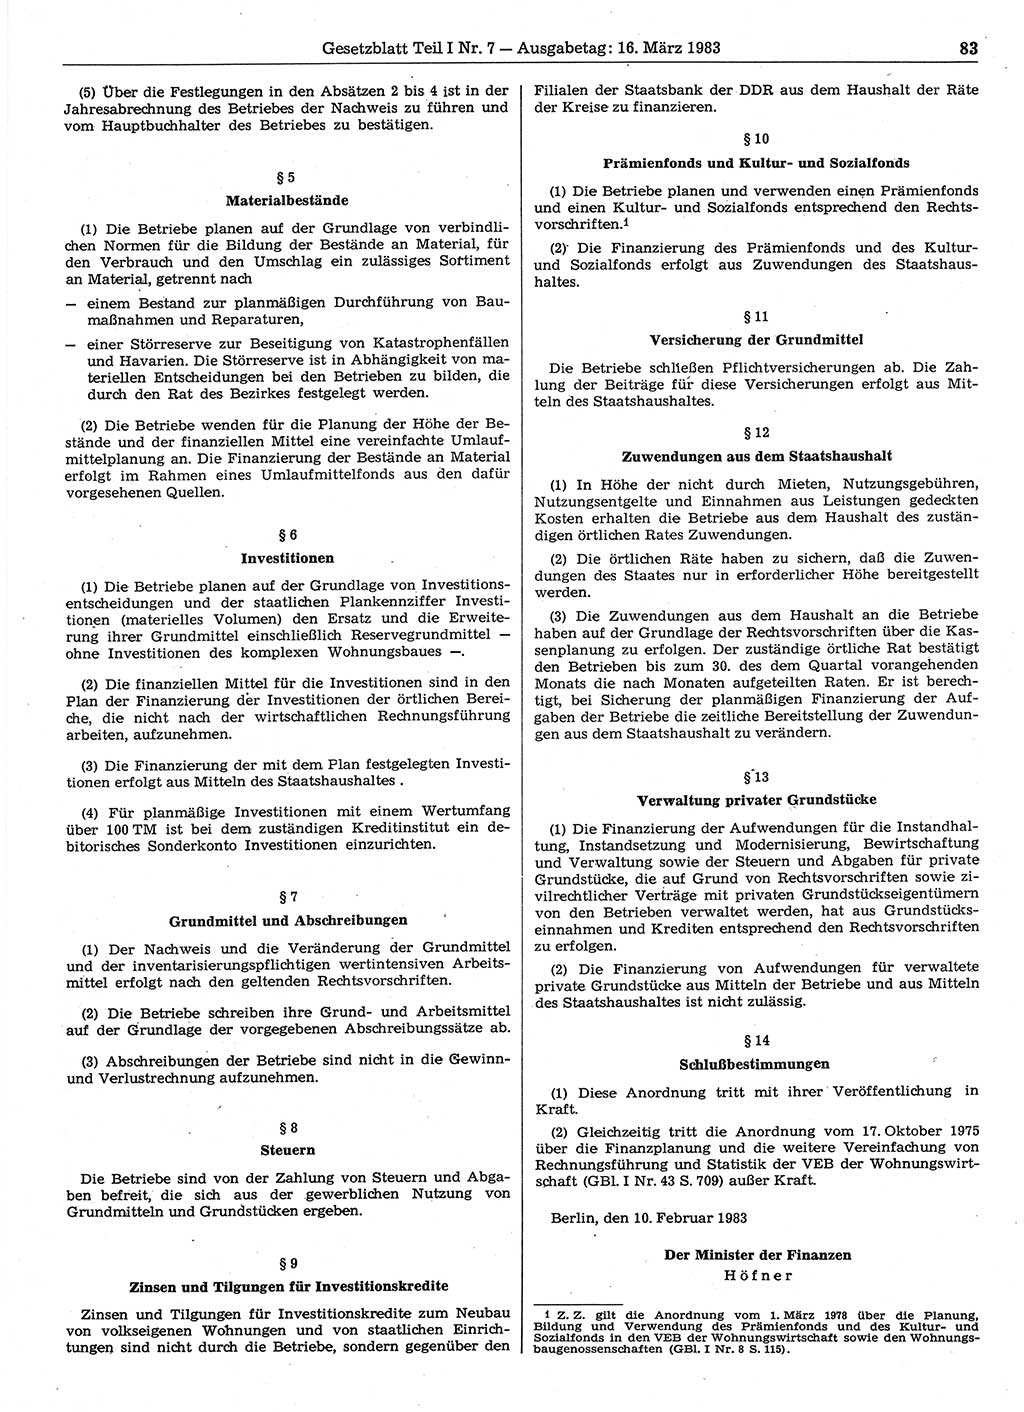 Gesetzblatt (GBl.) der Deutschen Demokratischen Republik (DDR) Teil Ⅰ 1983, Seite 83 (GBl. DDR Ⅰ 1983, S. 83)